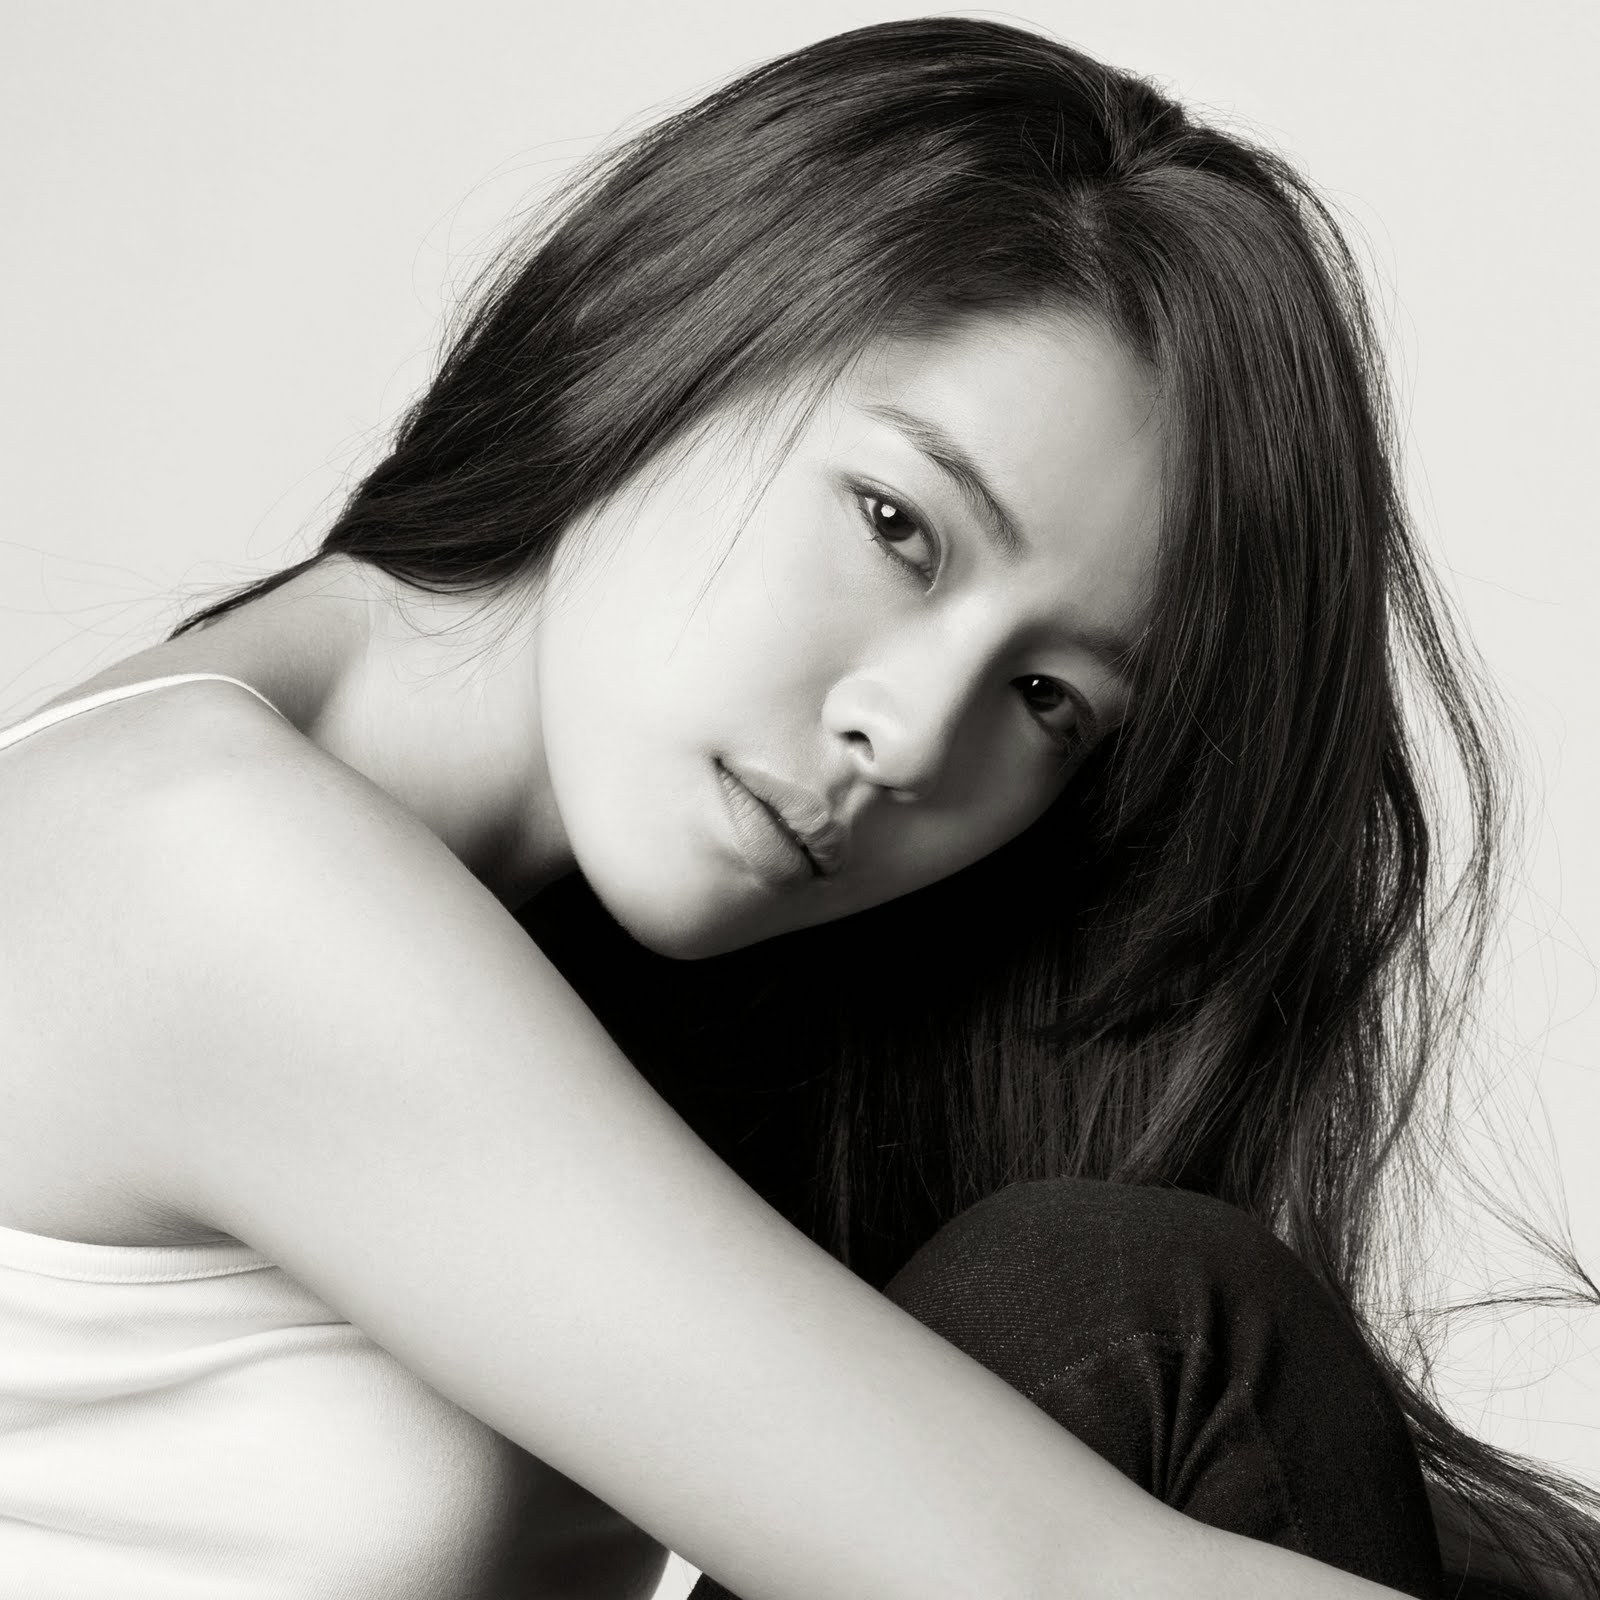 
	
	Son Na Eun – Apink với 48 phiếu về mắt
	
	
	Taeyeon – Girl’s Generation 34 phiếu về mắt.
	
	
	Ji Young – Kara với 78 phiếu về mũi
	
	
	Kahi với 44 phiếu về mũi.
	
	
	Hwang Jung Eun với 79 phiếu về đường nét khuôn mặt
	
	
	Goo Hara – Kara với 43 phiếu về đường nét khuôn mặt.